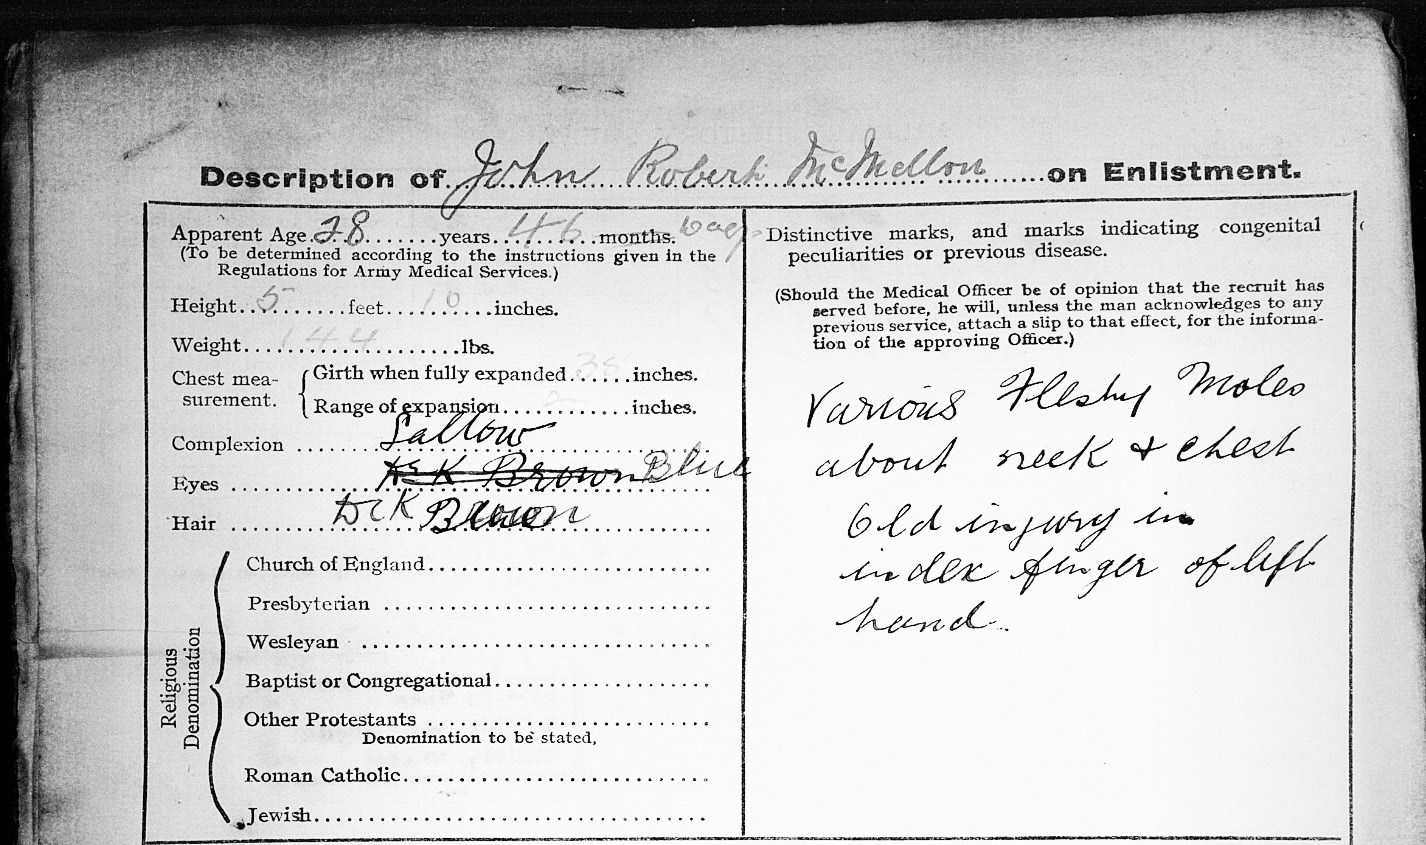 John Robert McMellon's detailed physical description in his service record